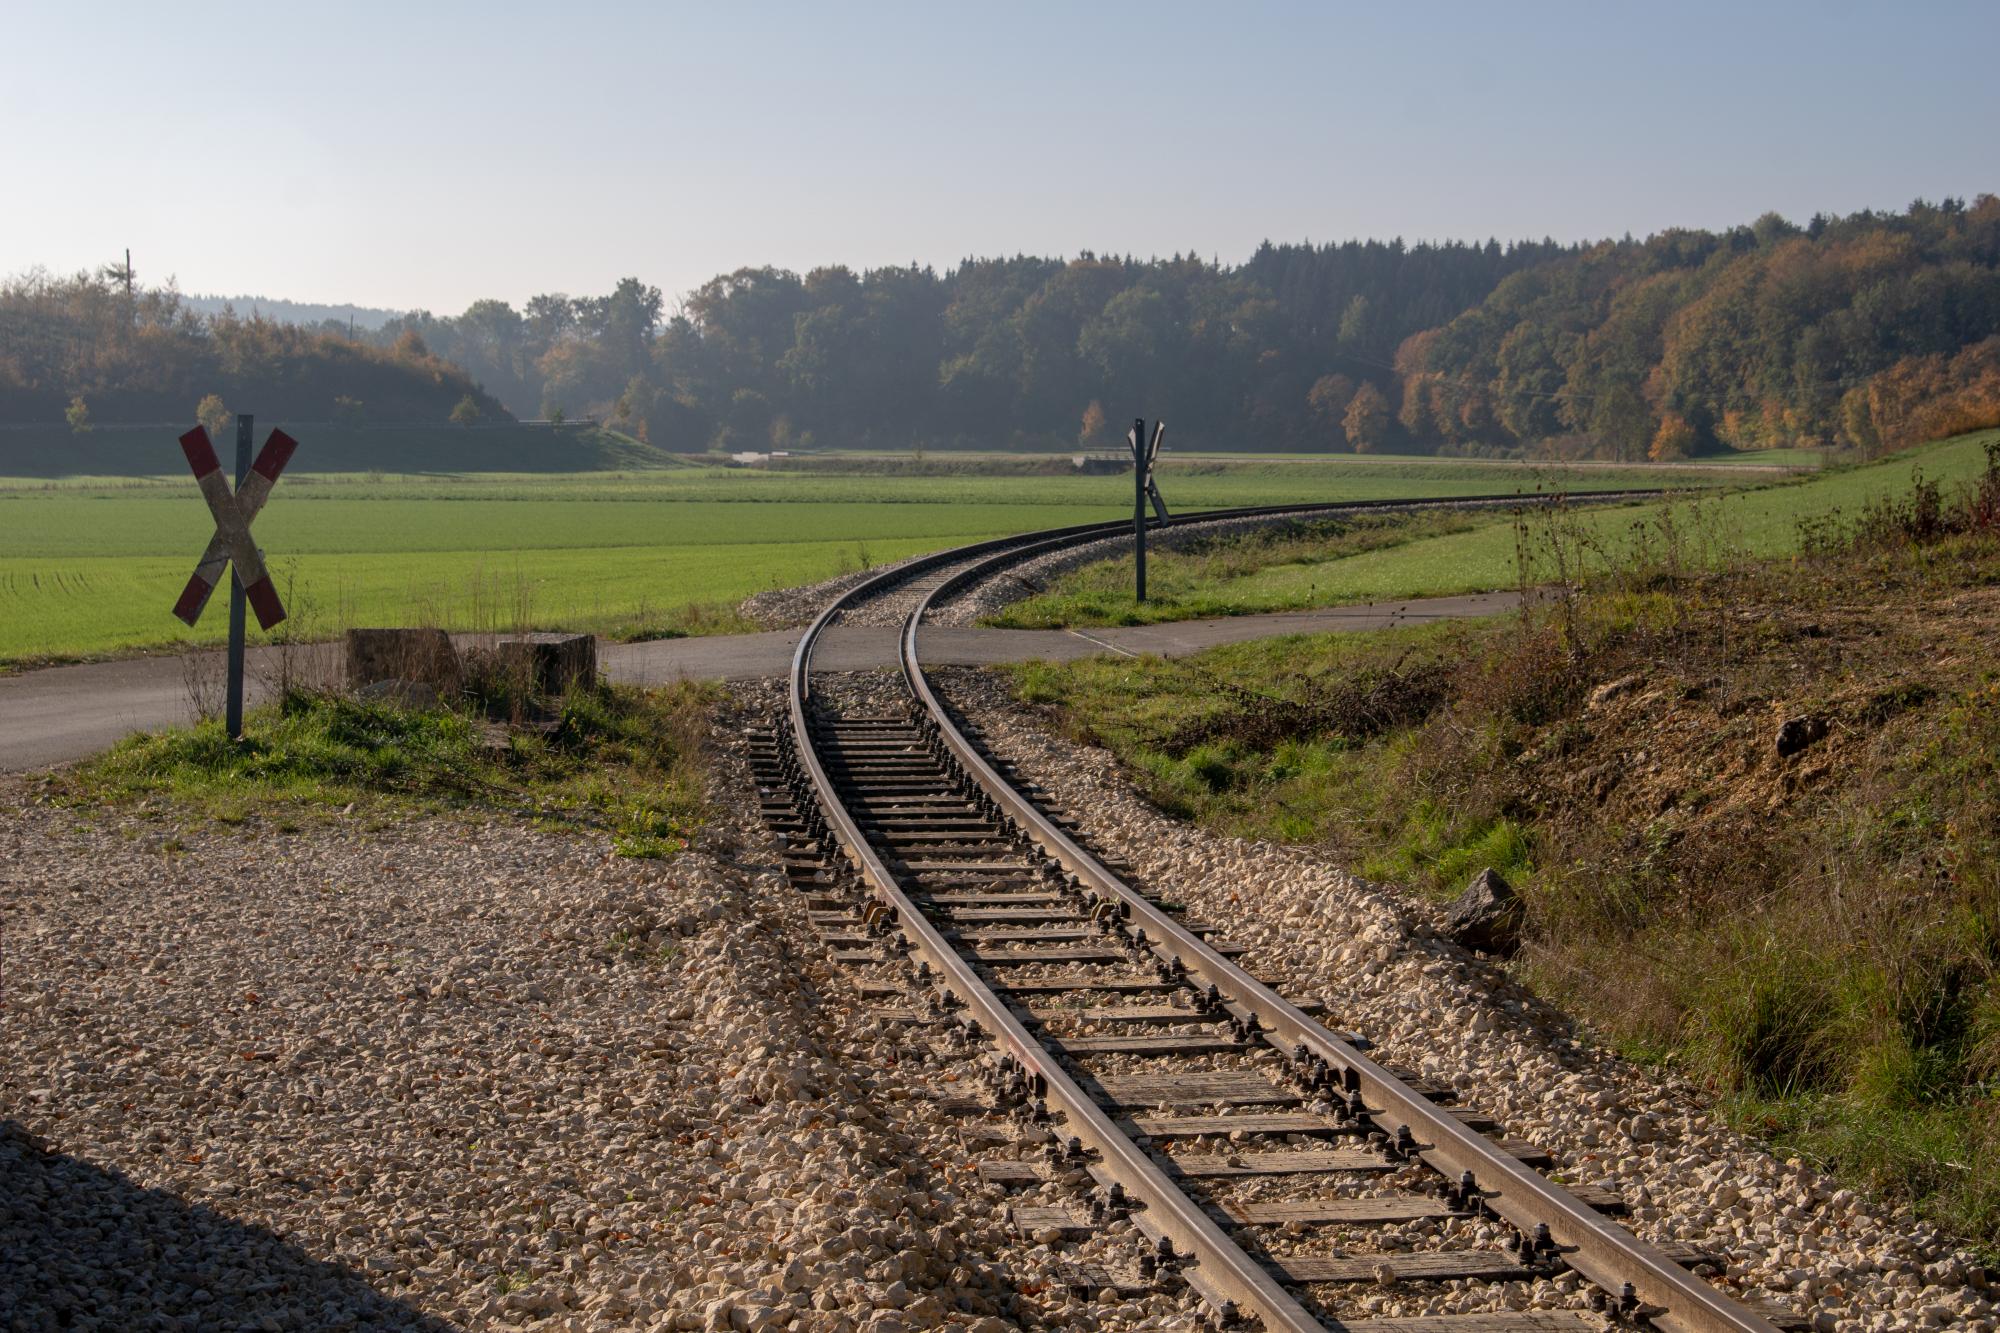 The heritage railway line